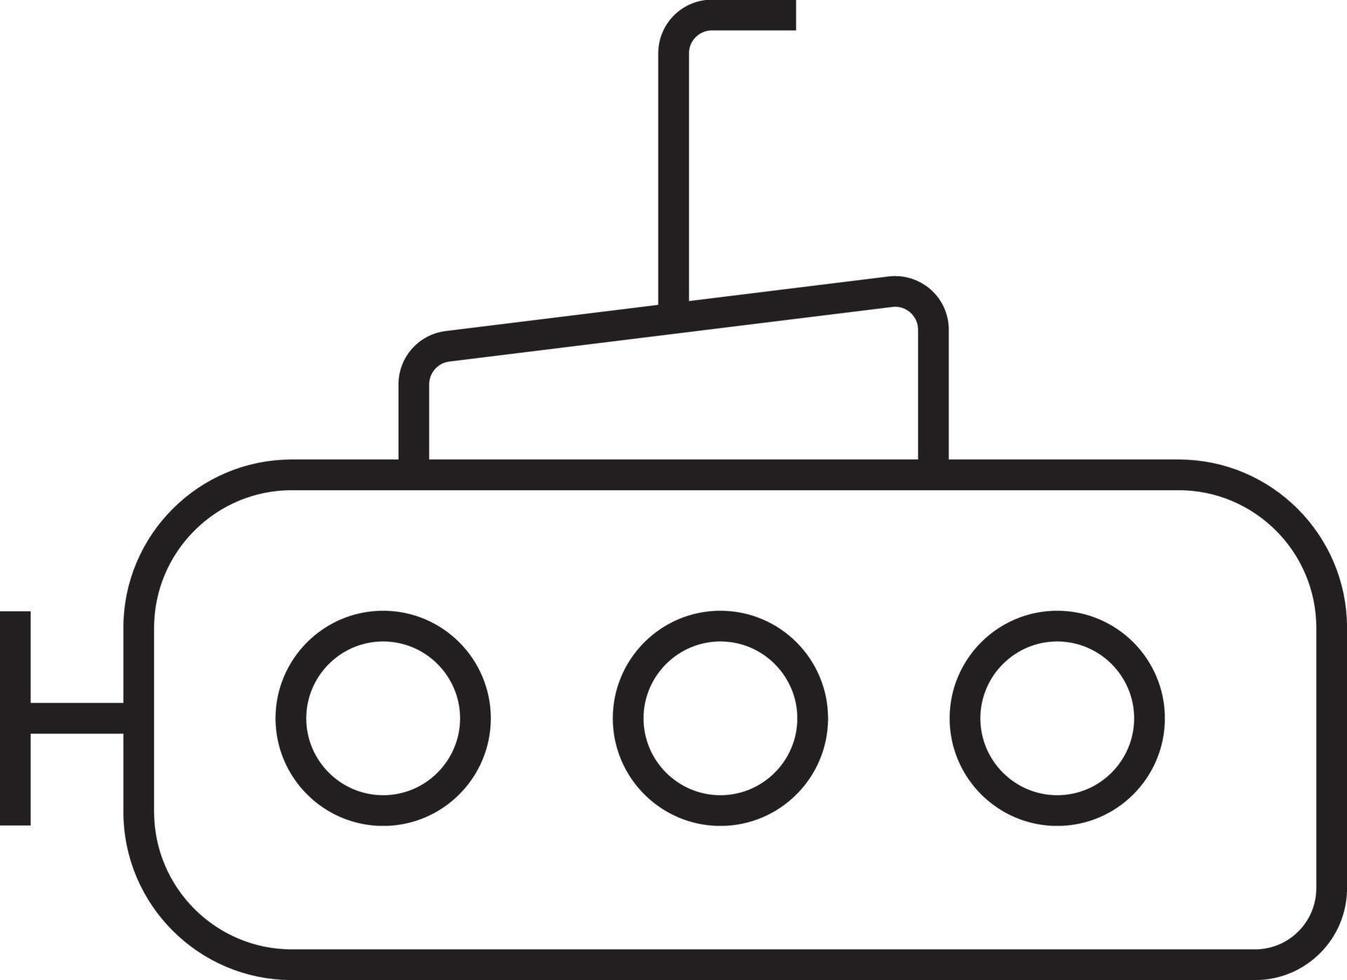 onderzeeër vervoer icoon mensen pictogrammen met zwart schets stijl. voertuig, symbool, vervoer, lijn, schets, station, reis, auto, bewerkbaar, pictogram, geïsoleerd, vlak. vector illustratie